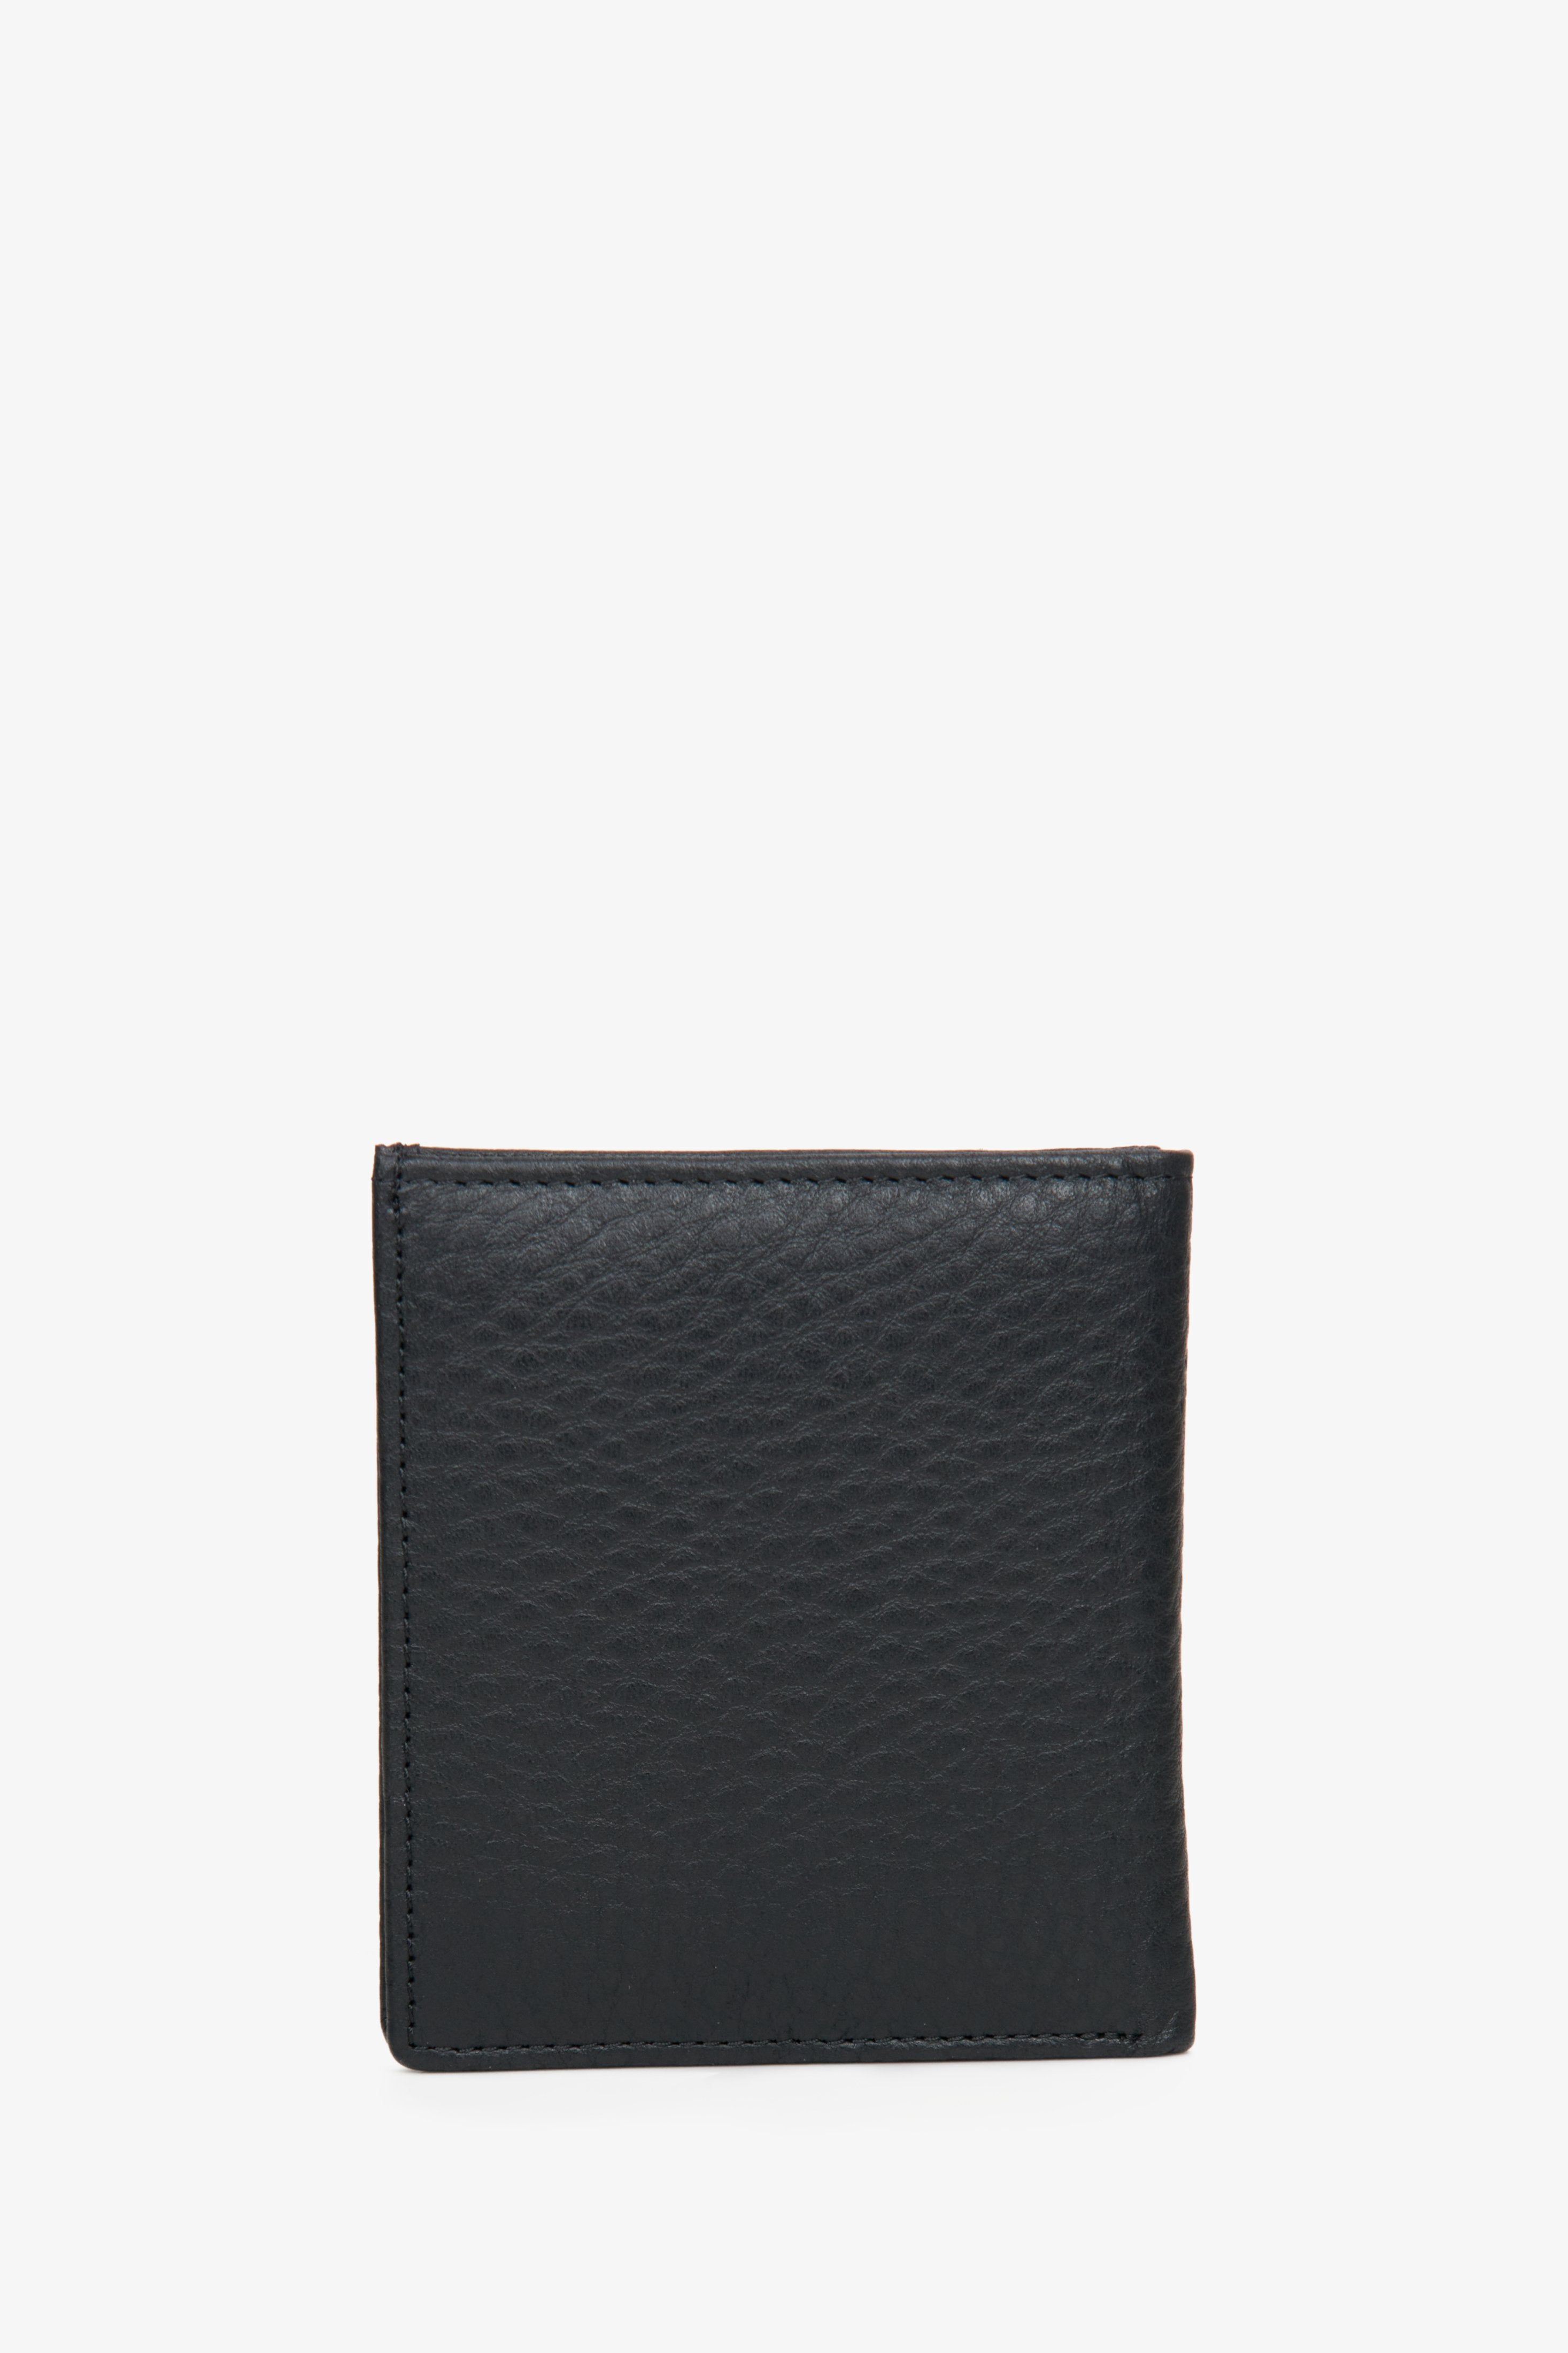 Czarny kompaktowy portfel męski Estro.